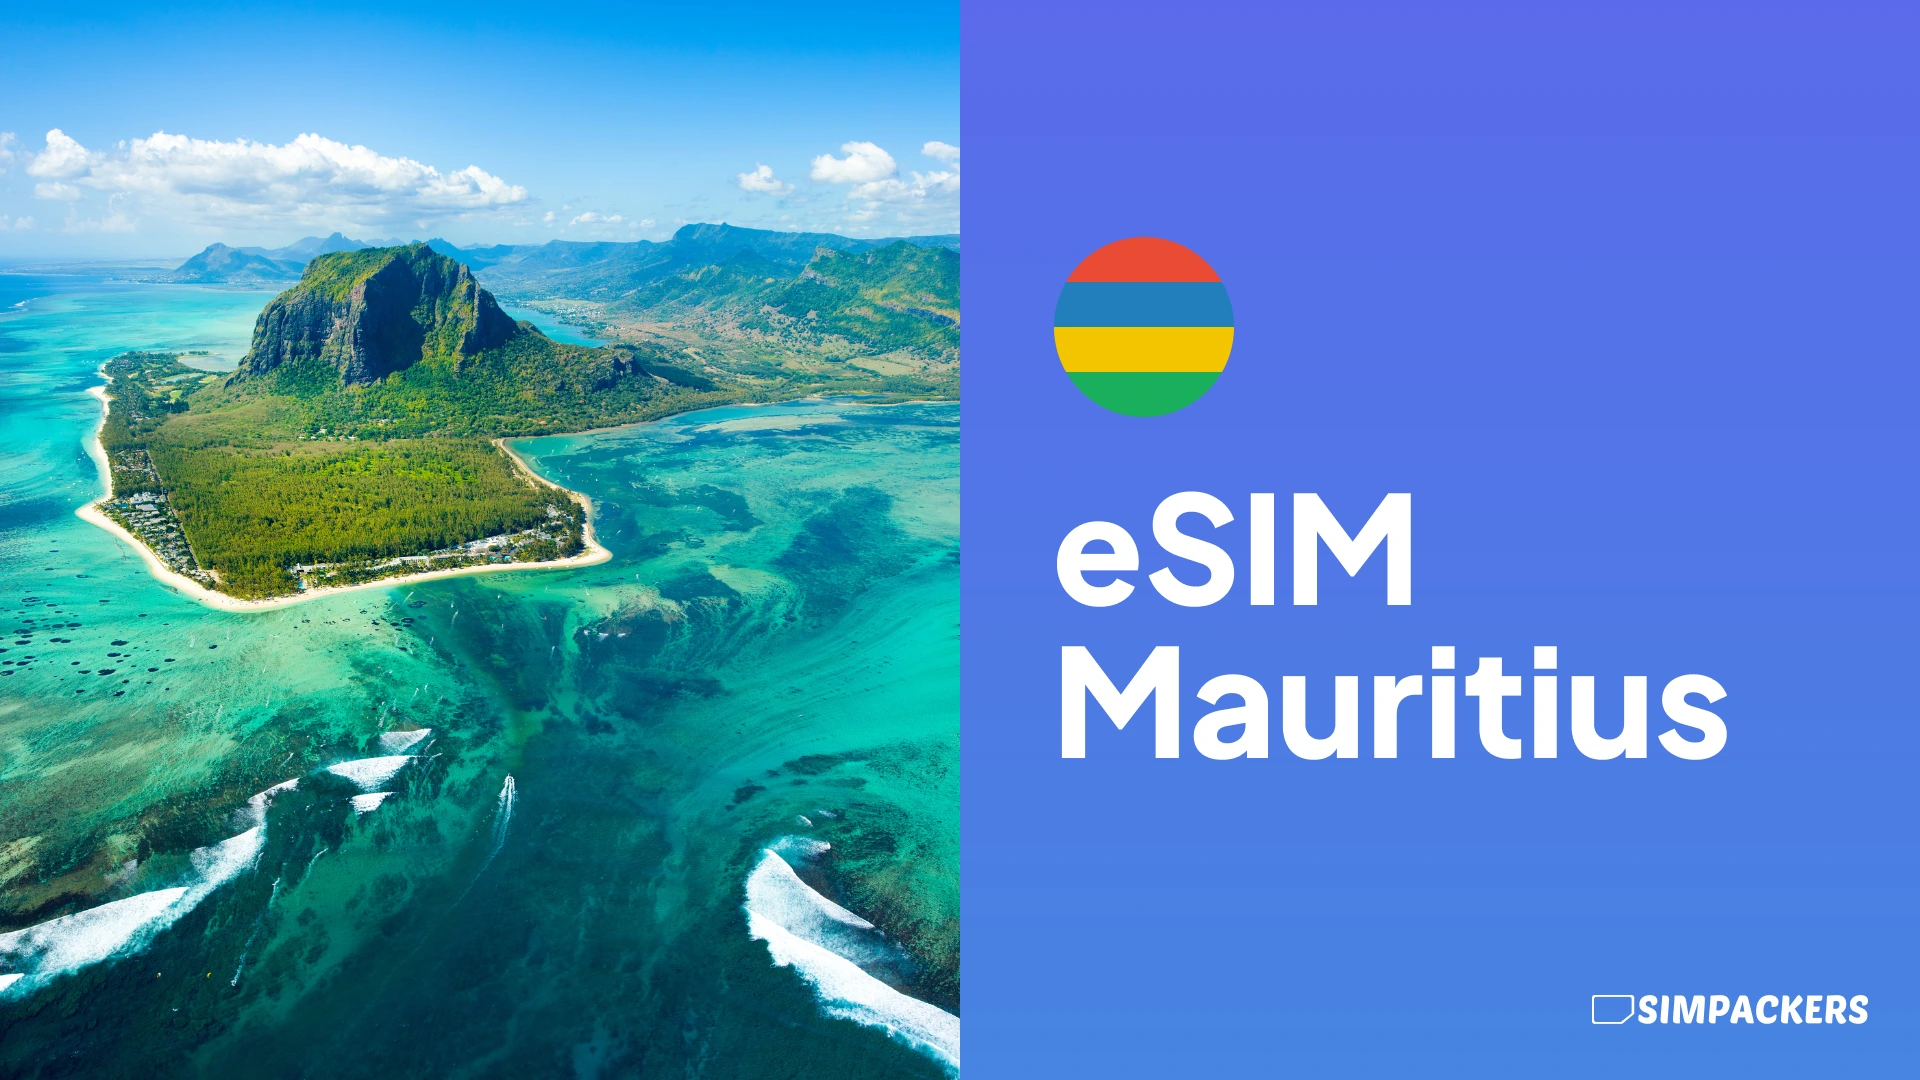 DE/FEATURED_IMAGES/esim-mauritius.webp